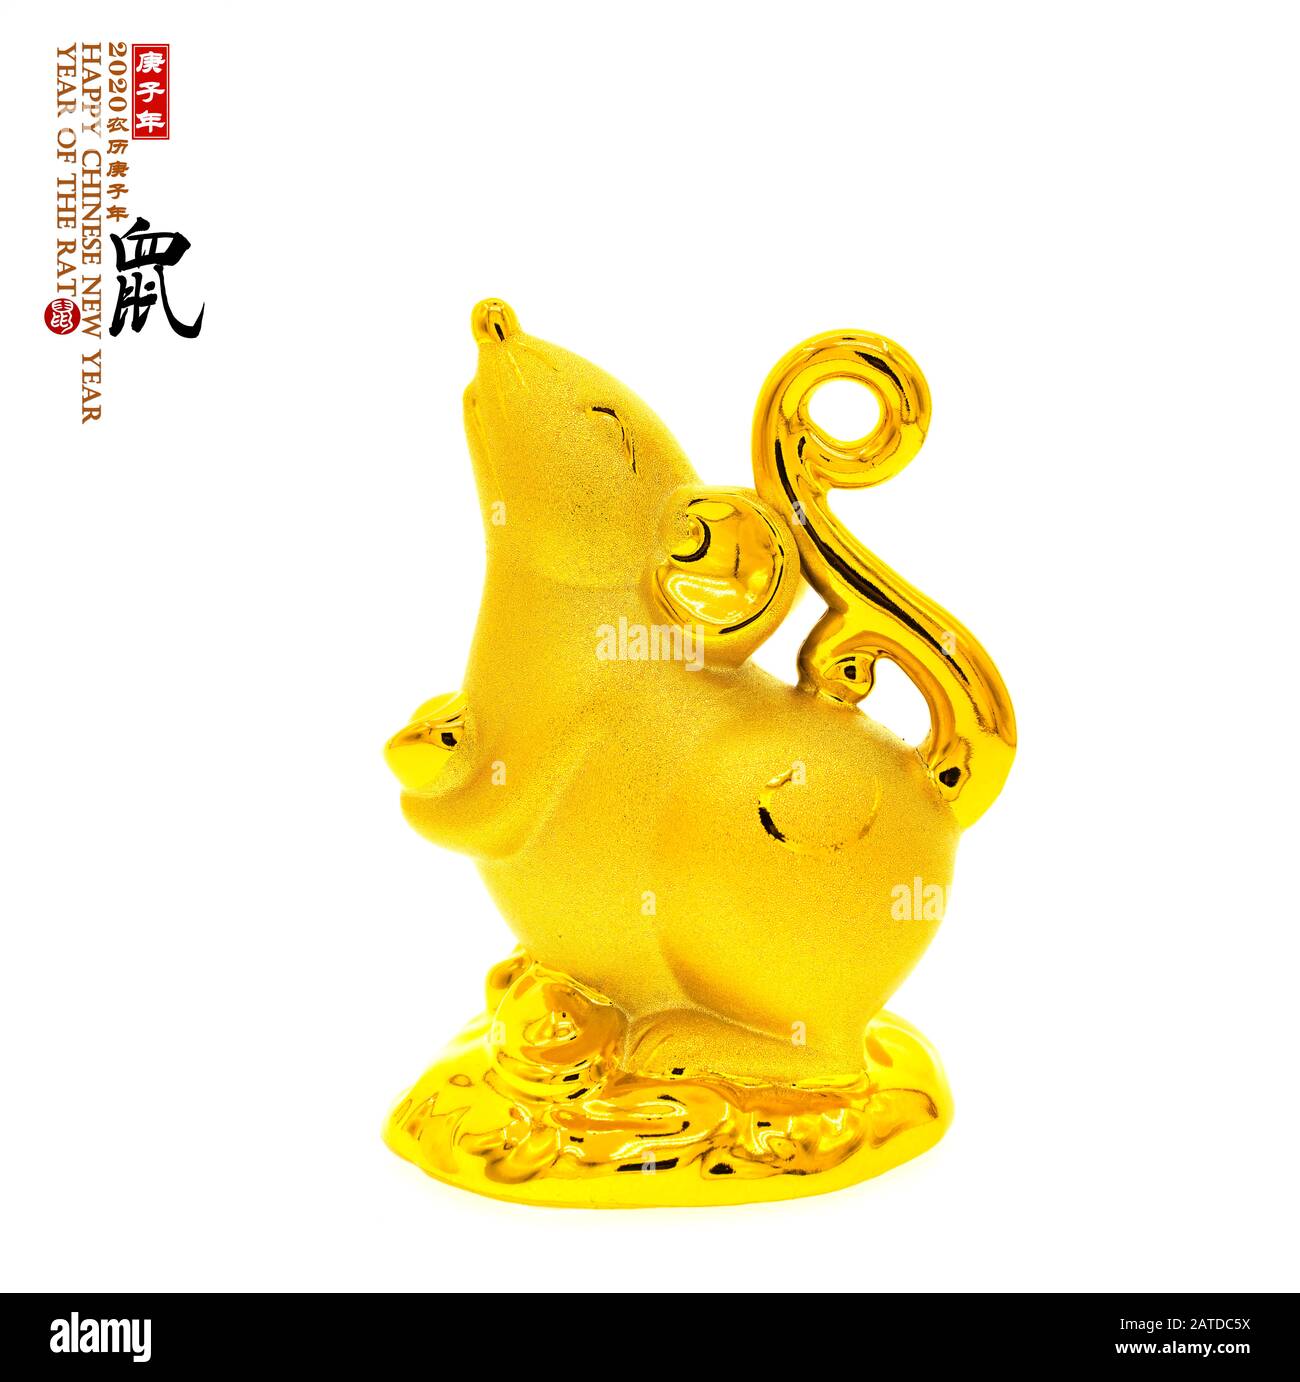 Tradition der Chinesischen goldene Ratte statue Ratte, 2020 ist das Jahr der Ratte, Chinesisch Übersetzung: 'Ratte'. rightside chinesische Wortlaut & Seal bedeuten: Chinesische ca Stockfoto